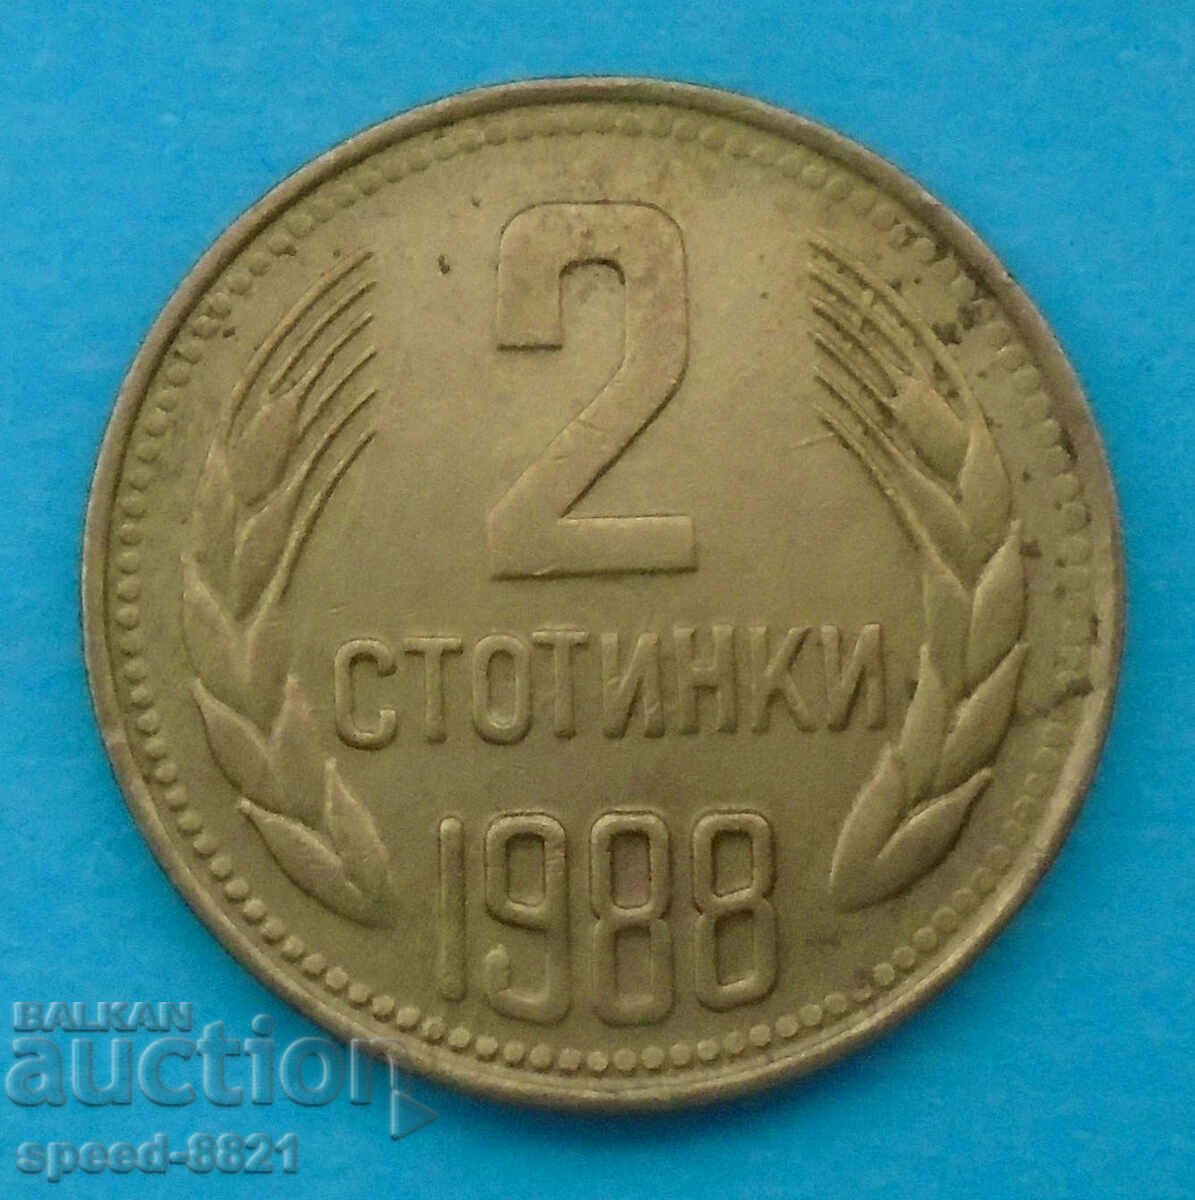 2 stotinki 1988 coin Bulgaria